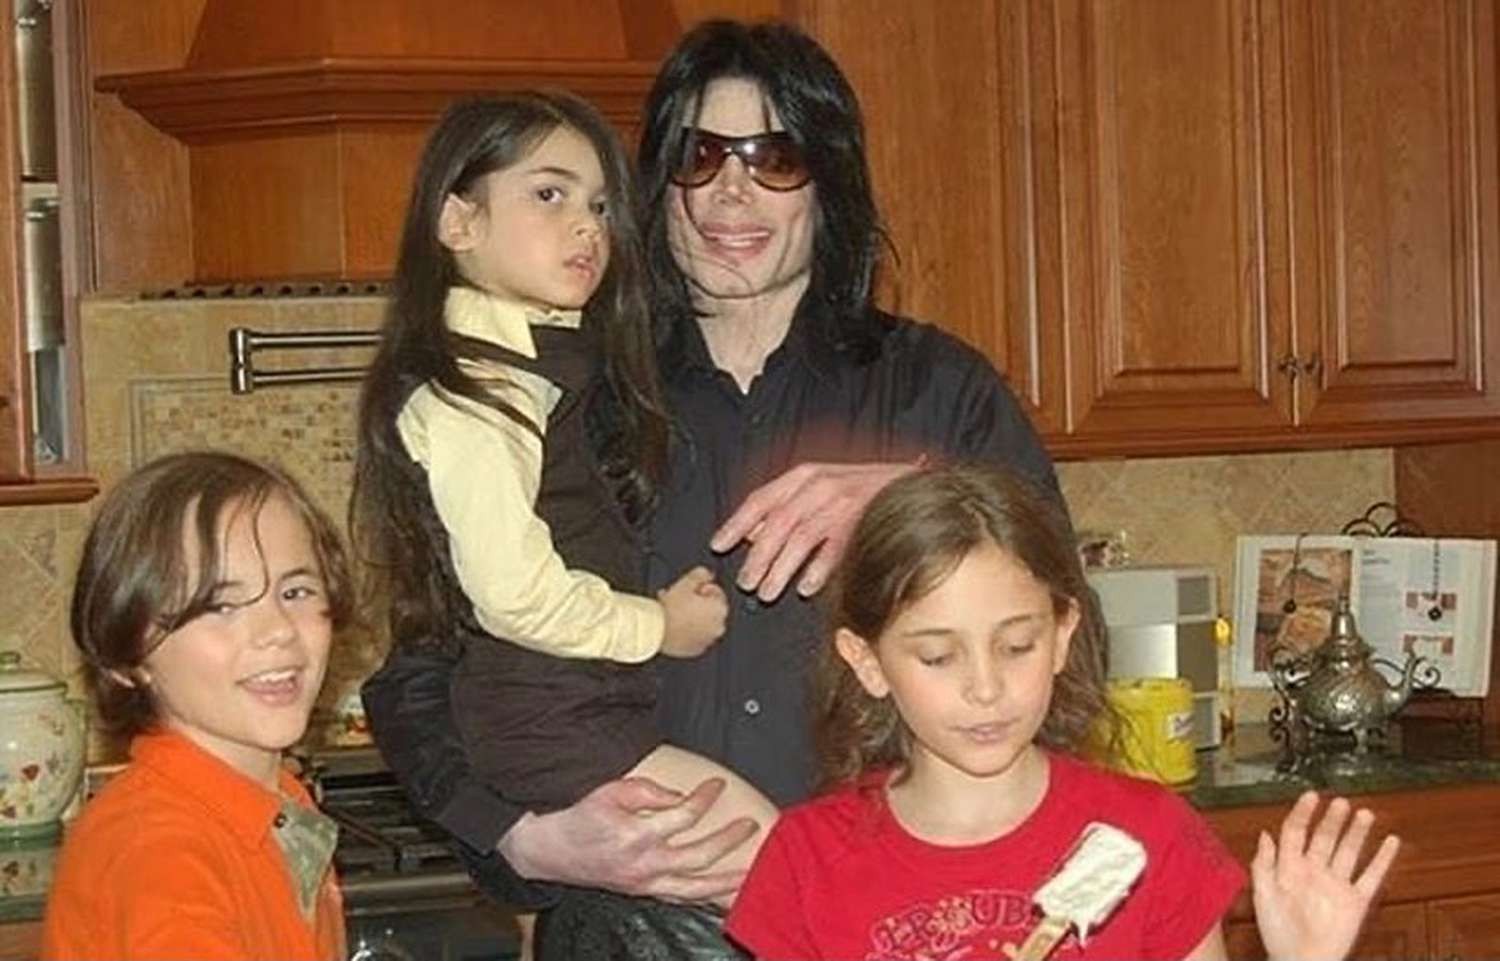 Michael Jackson with his children including Paris Jackson